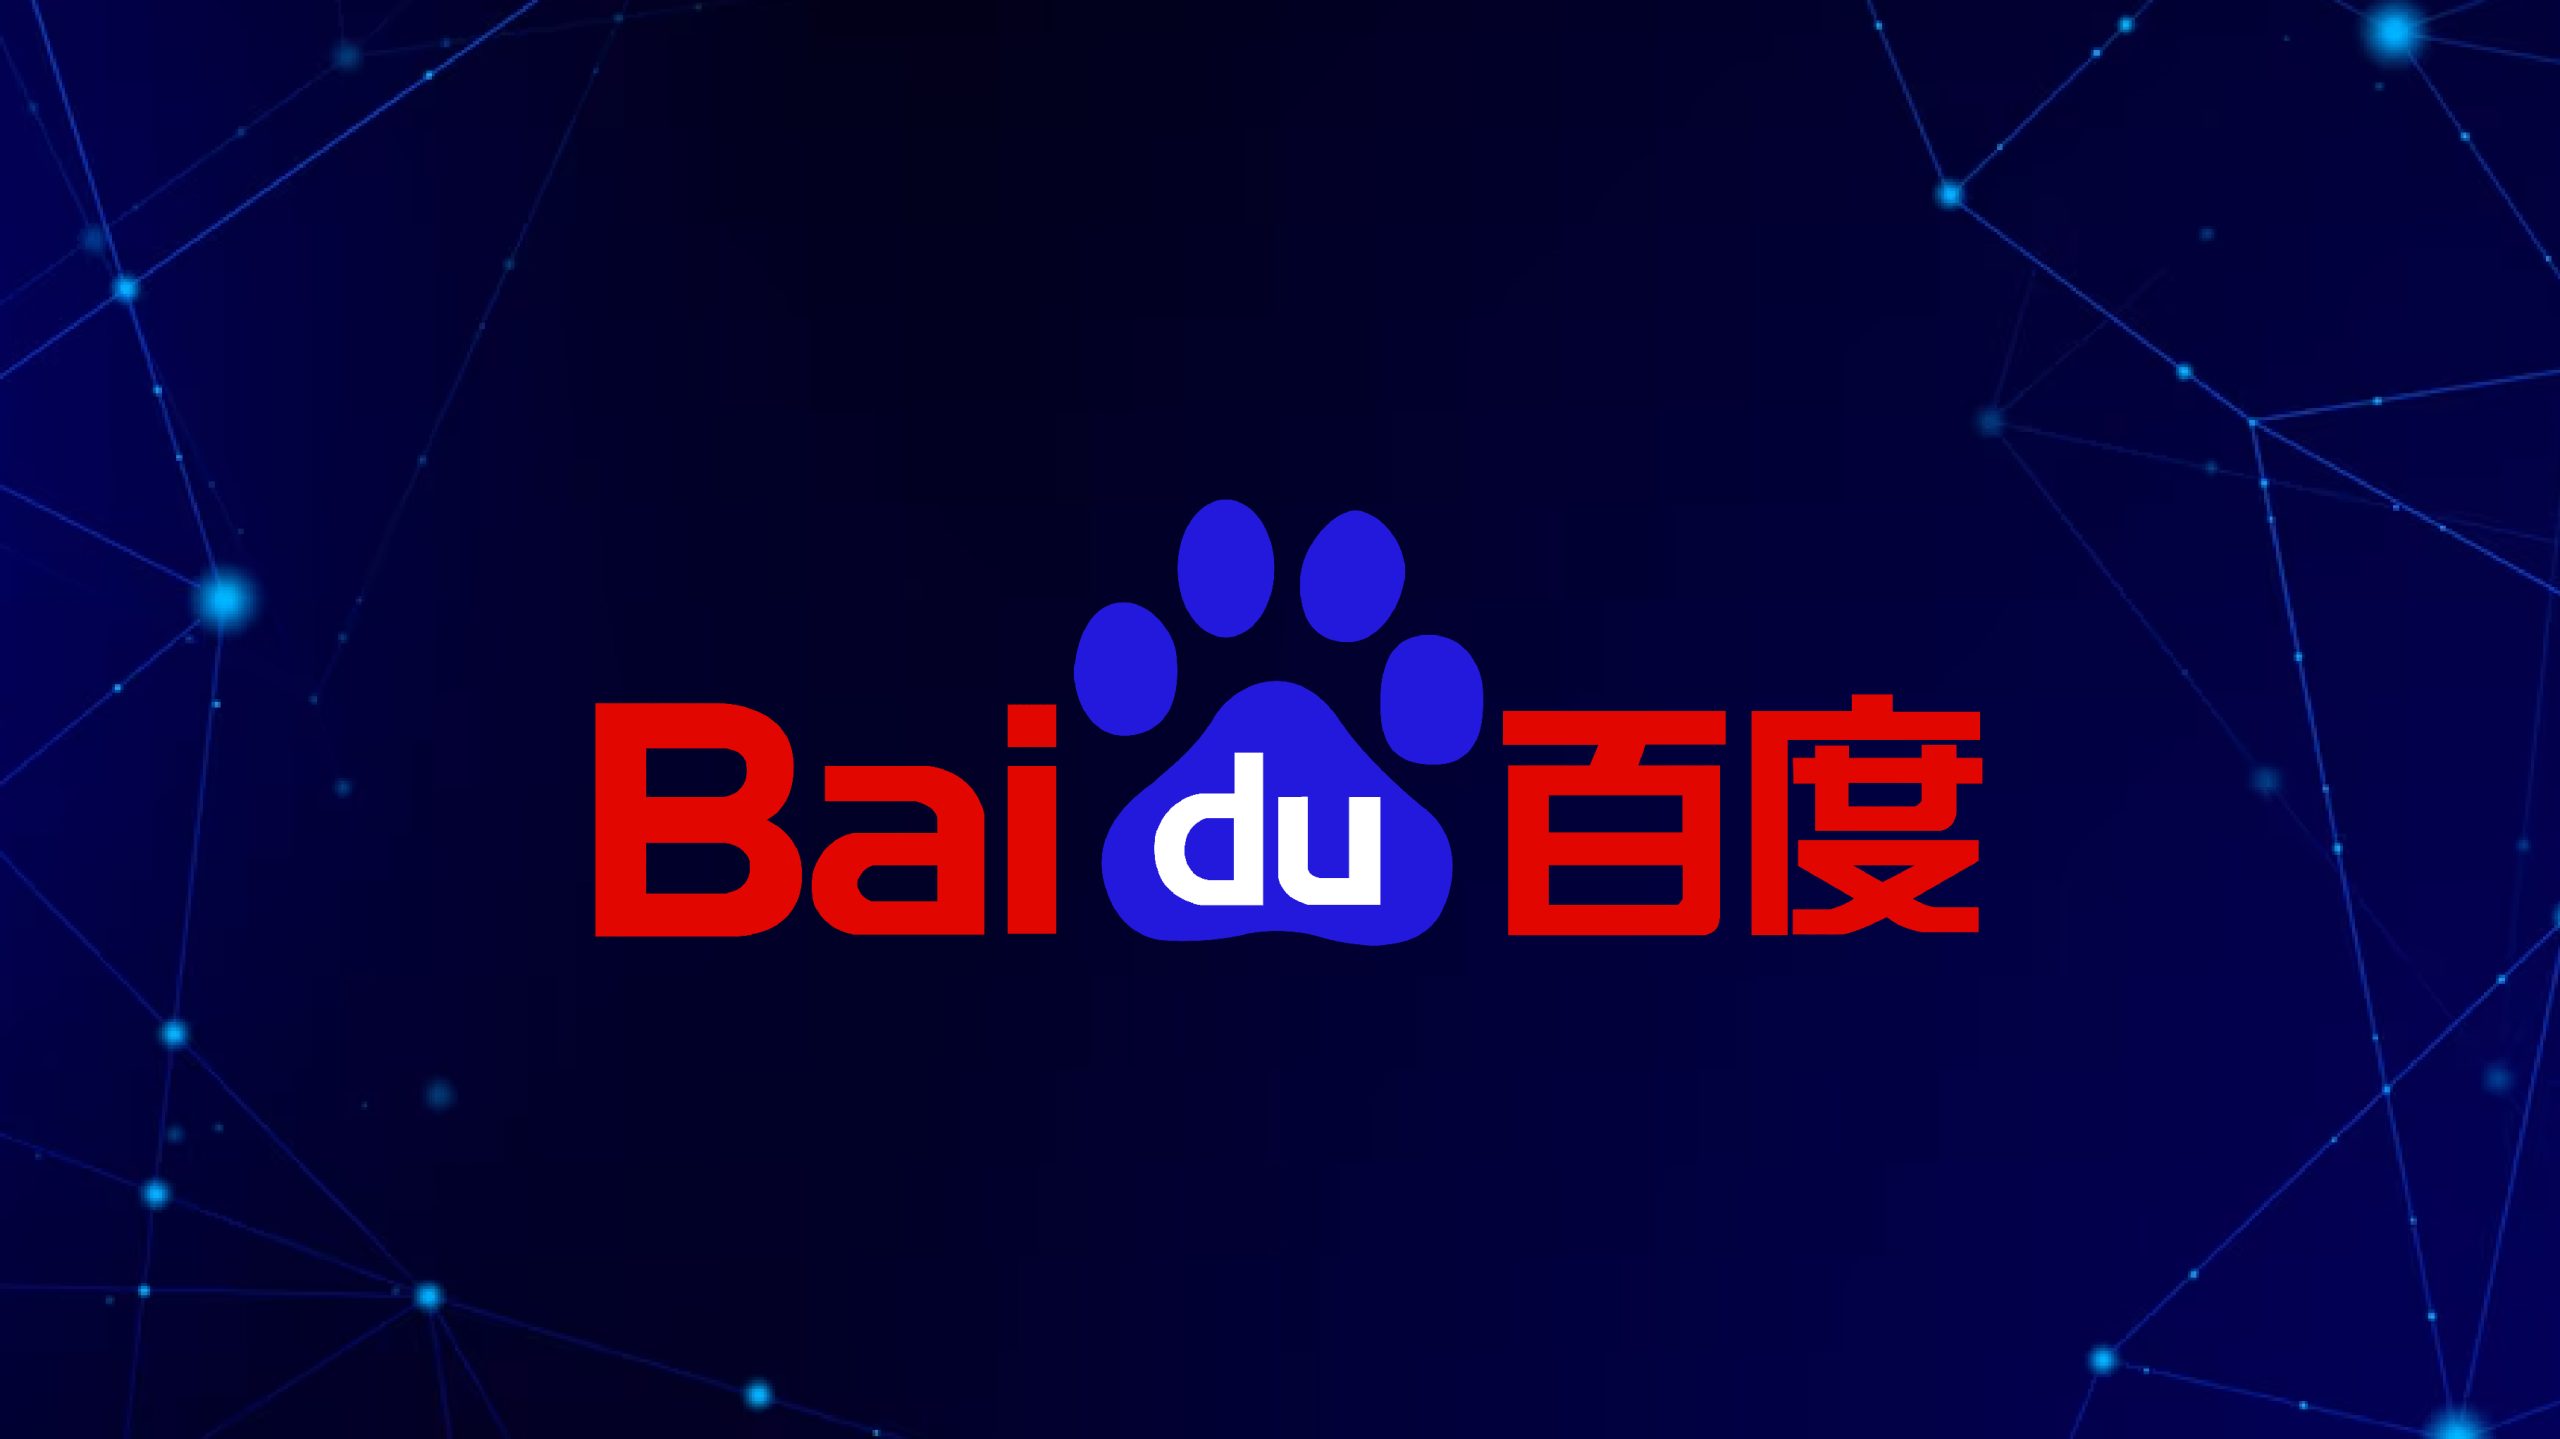 Η Alibaba και η Baidu σπεύδουν να αναβαθμίσουν τα Chatbots για να χειριστούν μεγαλύτερα κείμενα